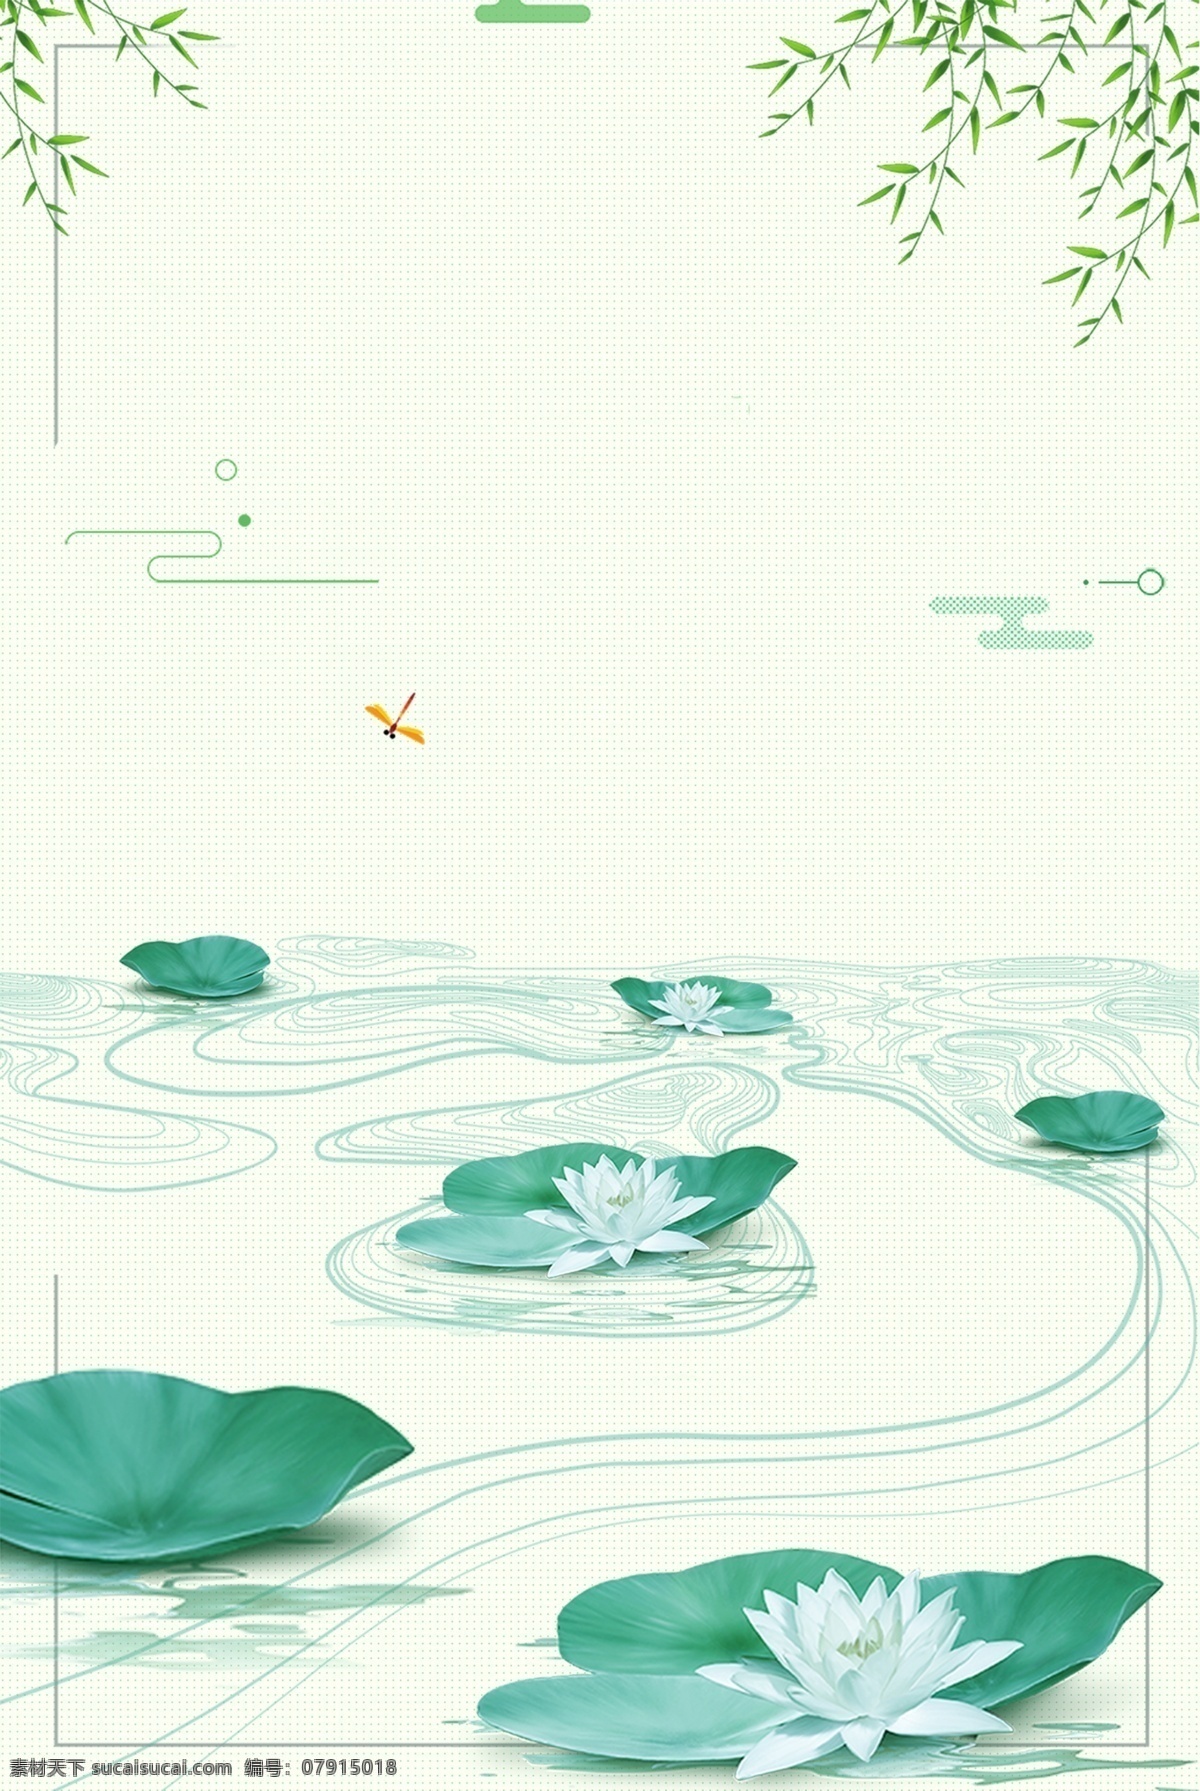 夏季 荷塘 简约 清新 海报 背景 图 柳叶 荷花 池塘 底纹 绿色 边框 文艺